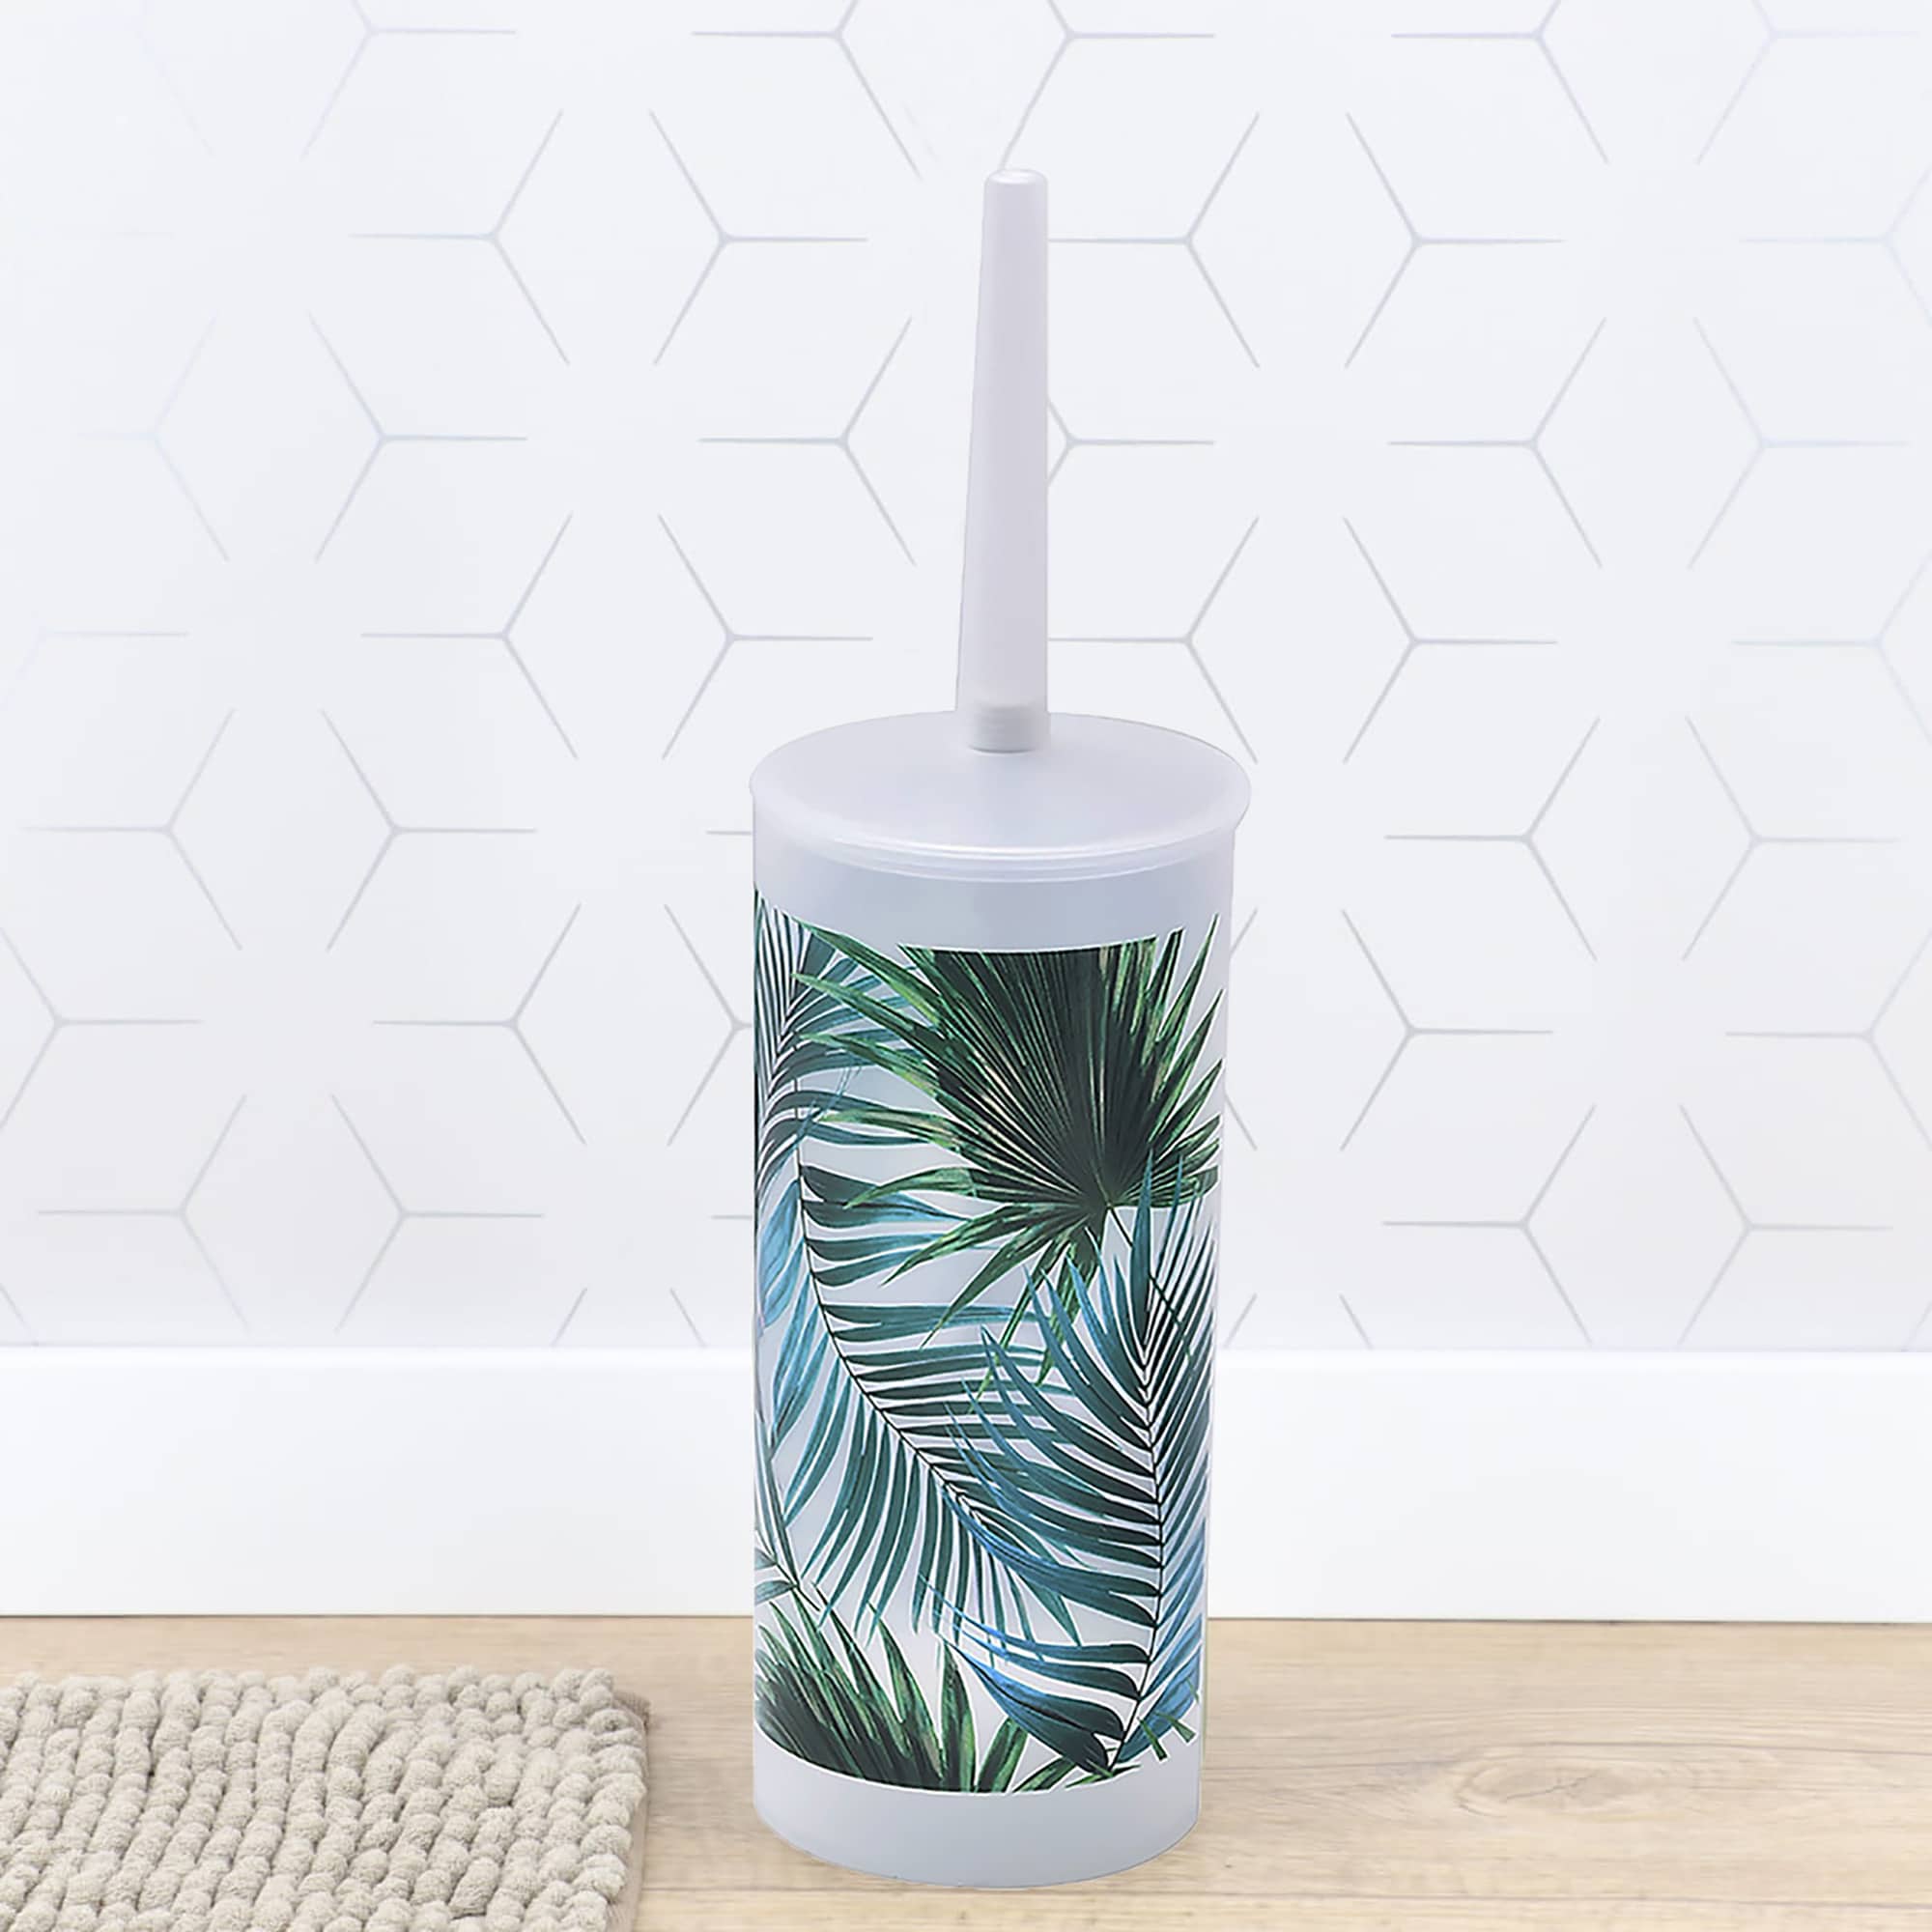 escobillero y soporte de plástico decorativo con diseño de hoja de palmera